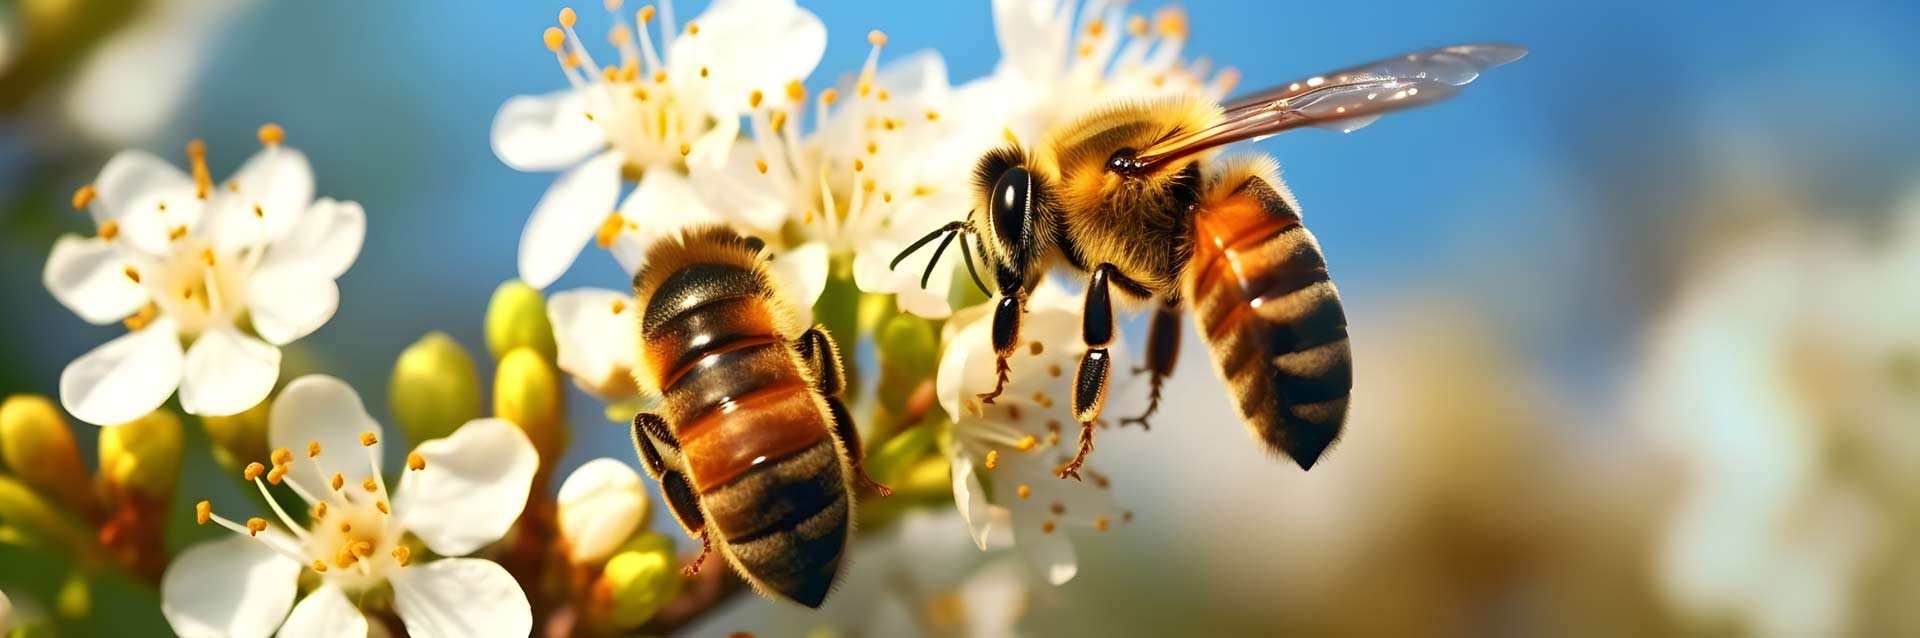 Entenda o que é néctar e sua importância para a jardinagem